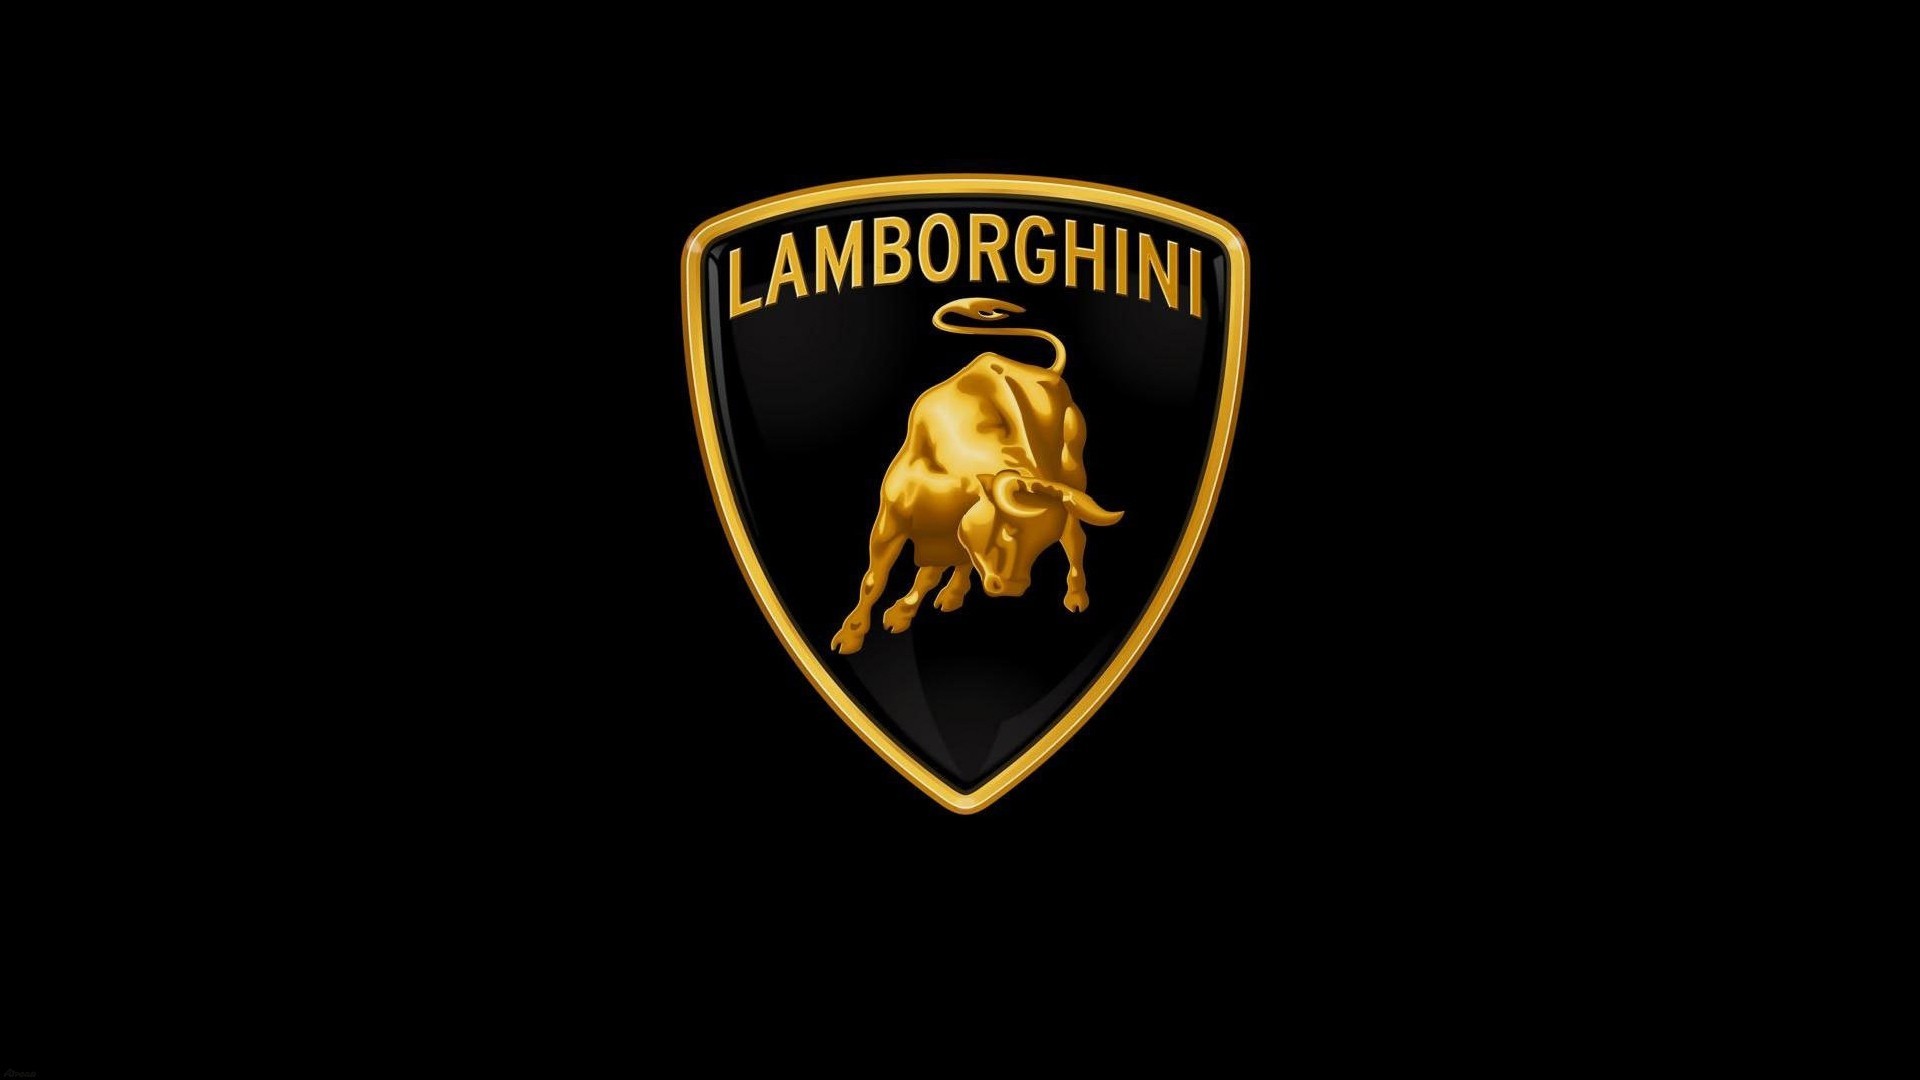 1920x1080 Lamborghini Logo Wallpapers Hd. Lamborghini logo hd wallpapers. Lamborghini  log.